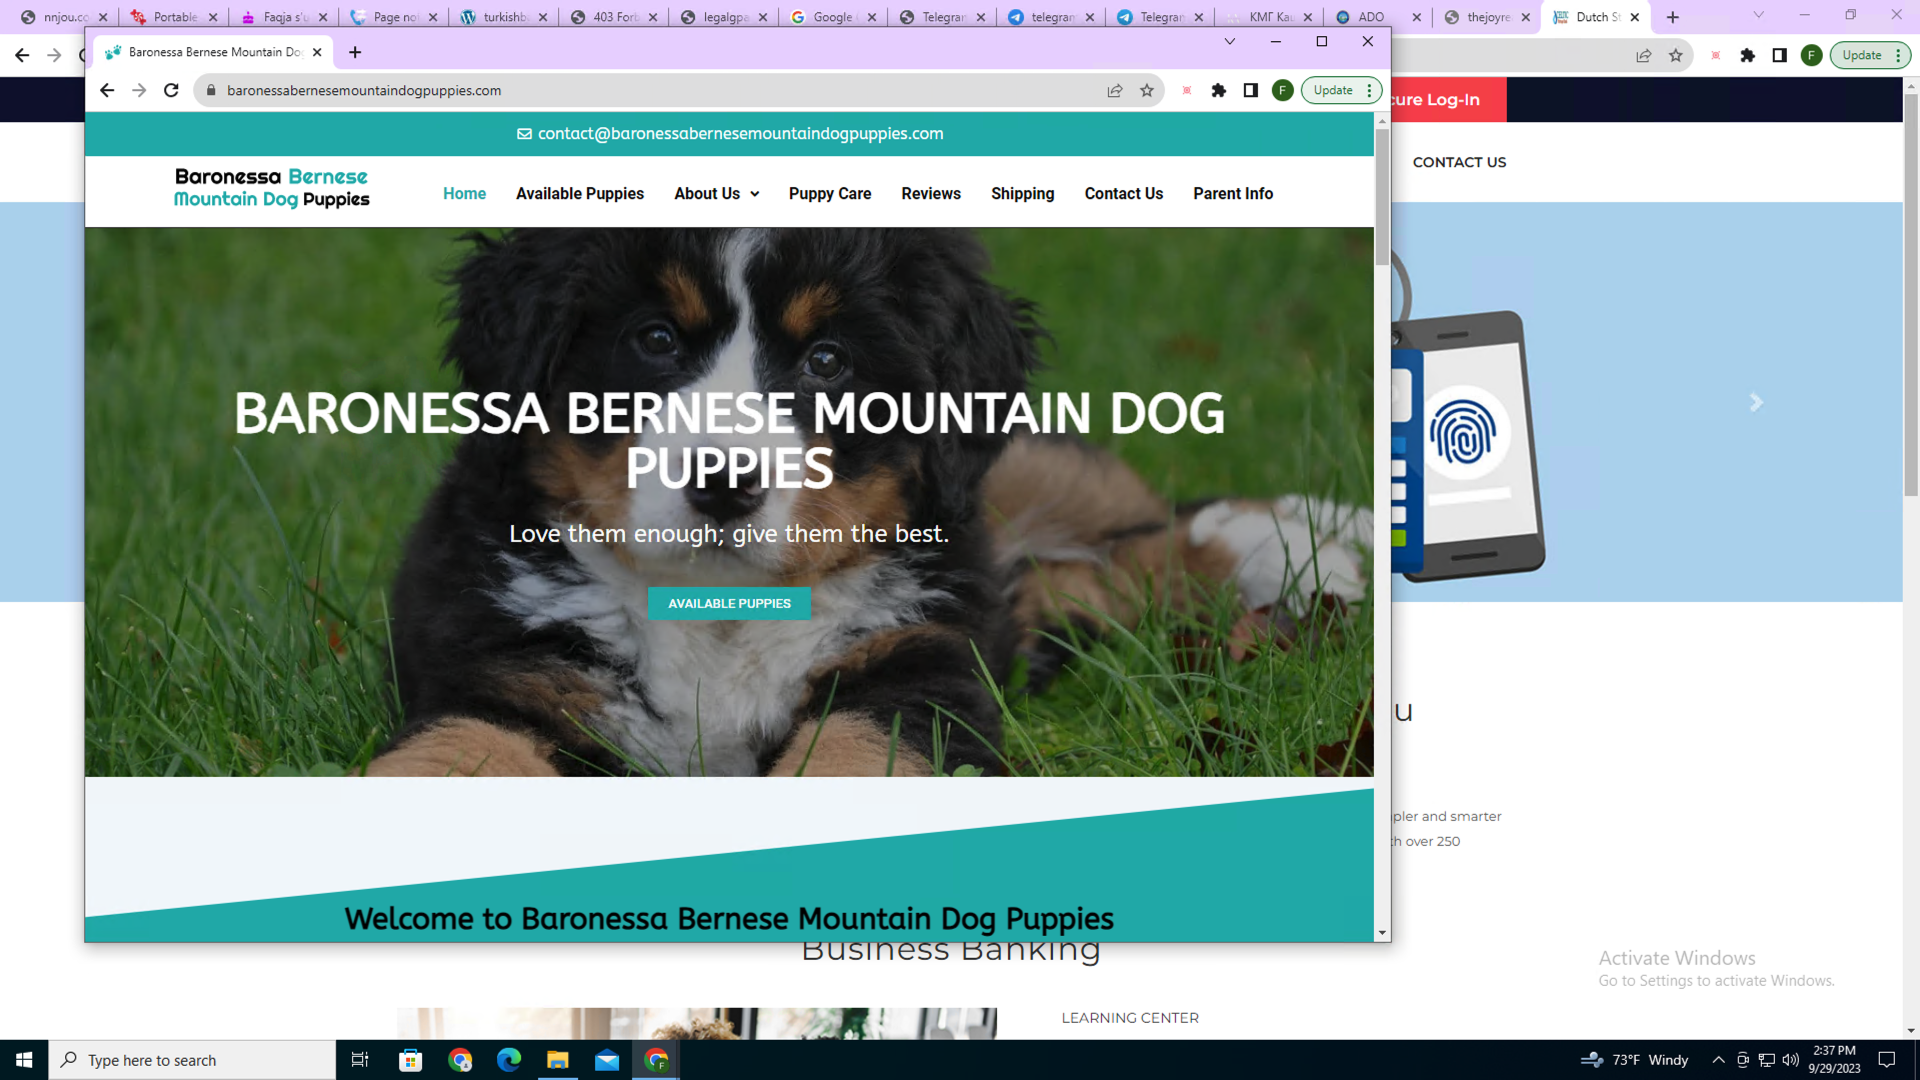 画像 1 は、バロネッサ バーニーズ マウンテン ドッグの仔犬の Web サイトのスクリーンショットです。バーニーズ マウンテン ドッグの仔犬の画像があります。入手可能な仔犬を表示するボタンがあります。メニュー オプションには、購入可能な仔犬、私たちについて、仔犬の世話、レビューなどが含まれています。